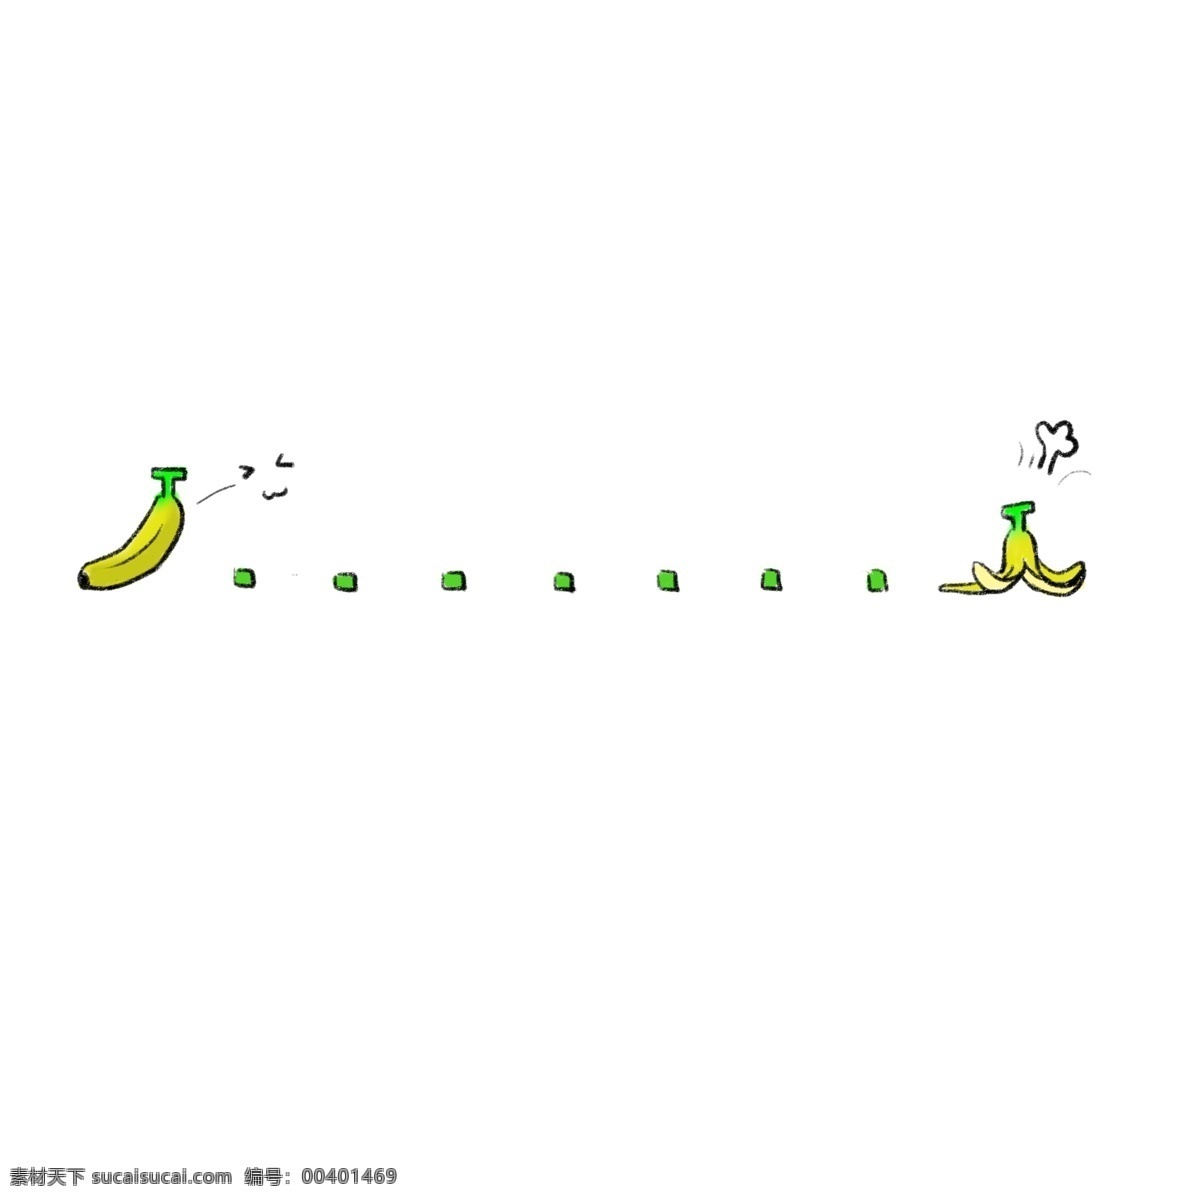 香蕉 分割线 装饰 插画 黄色的分割线 香蕉分割线 美食分割线 水果分割线 分割线装饰 立体分割线